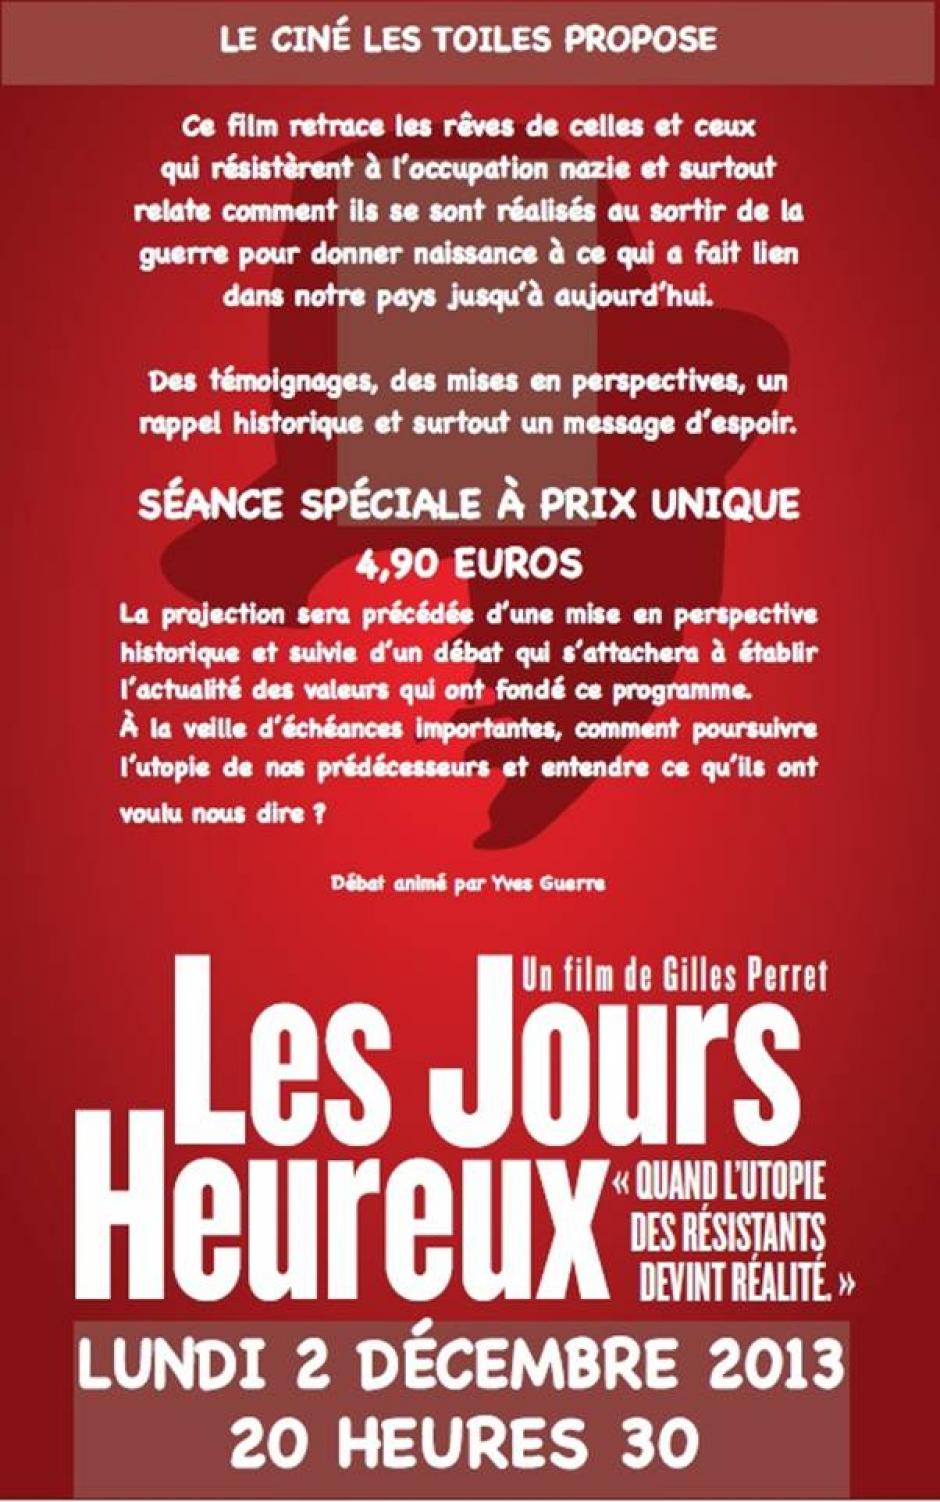 2 décembre, Crépy-en-Valois - Projection-débat autour de « Les Jours heureux »